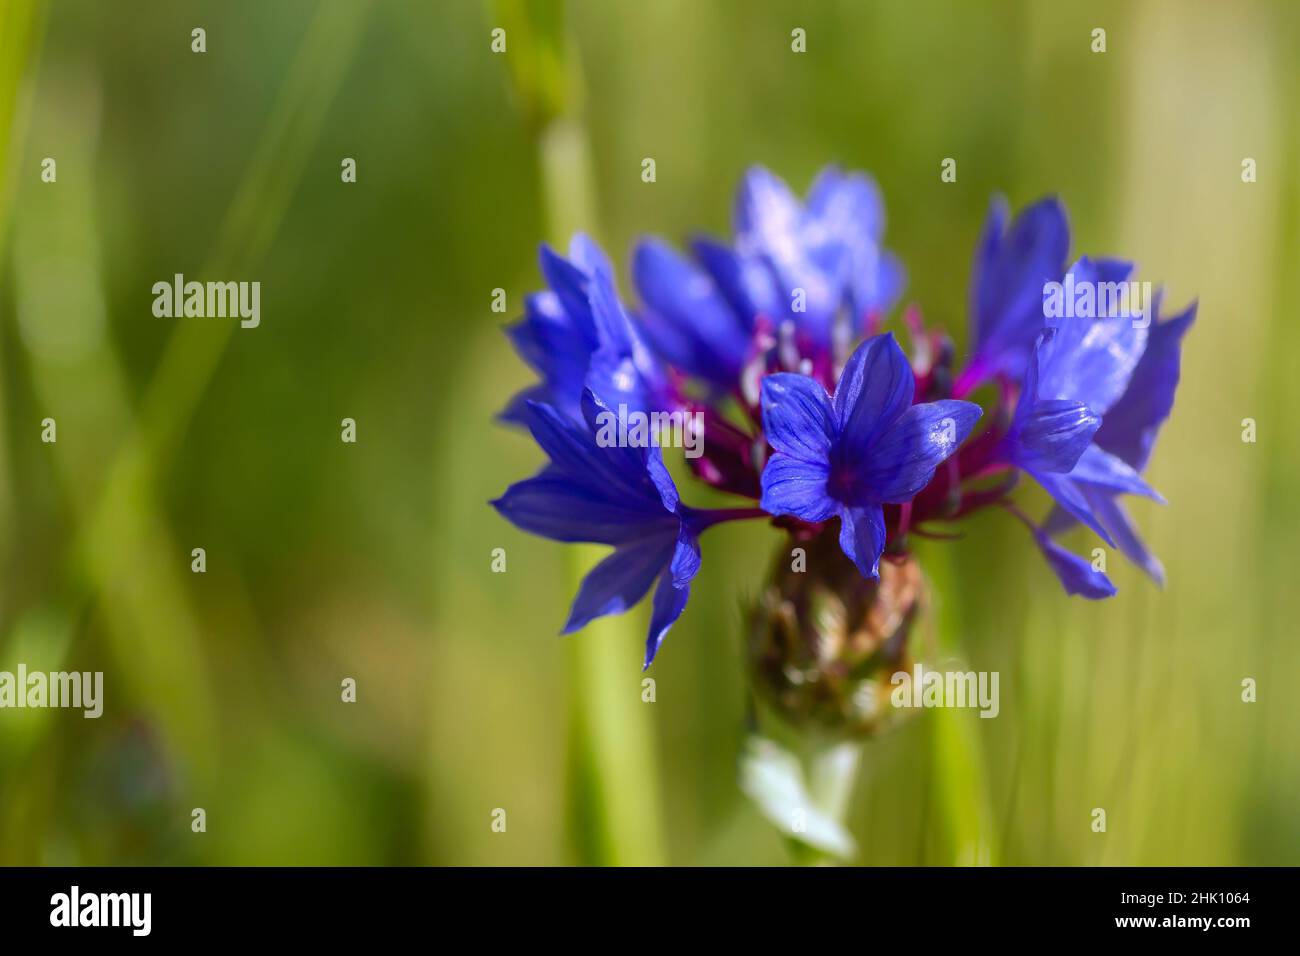 Bouton de baccalauréat (Centaurea cyanus) fleur bleue purplish floraison Banque D'Images